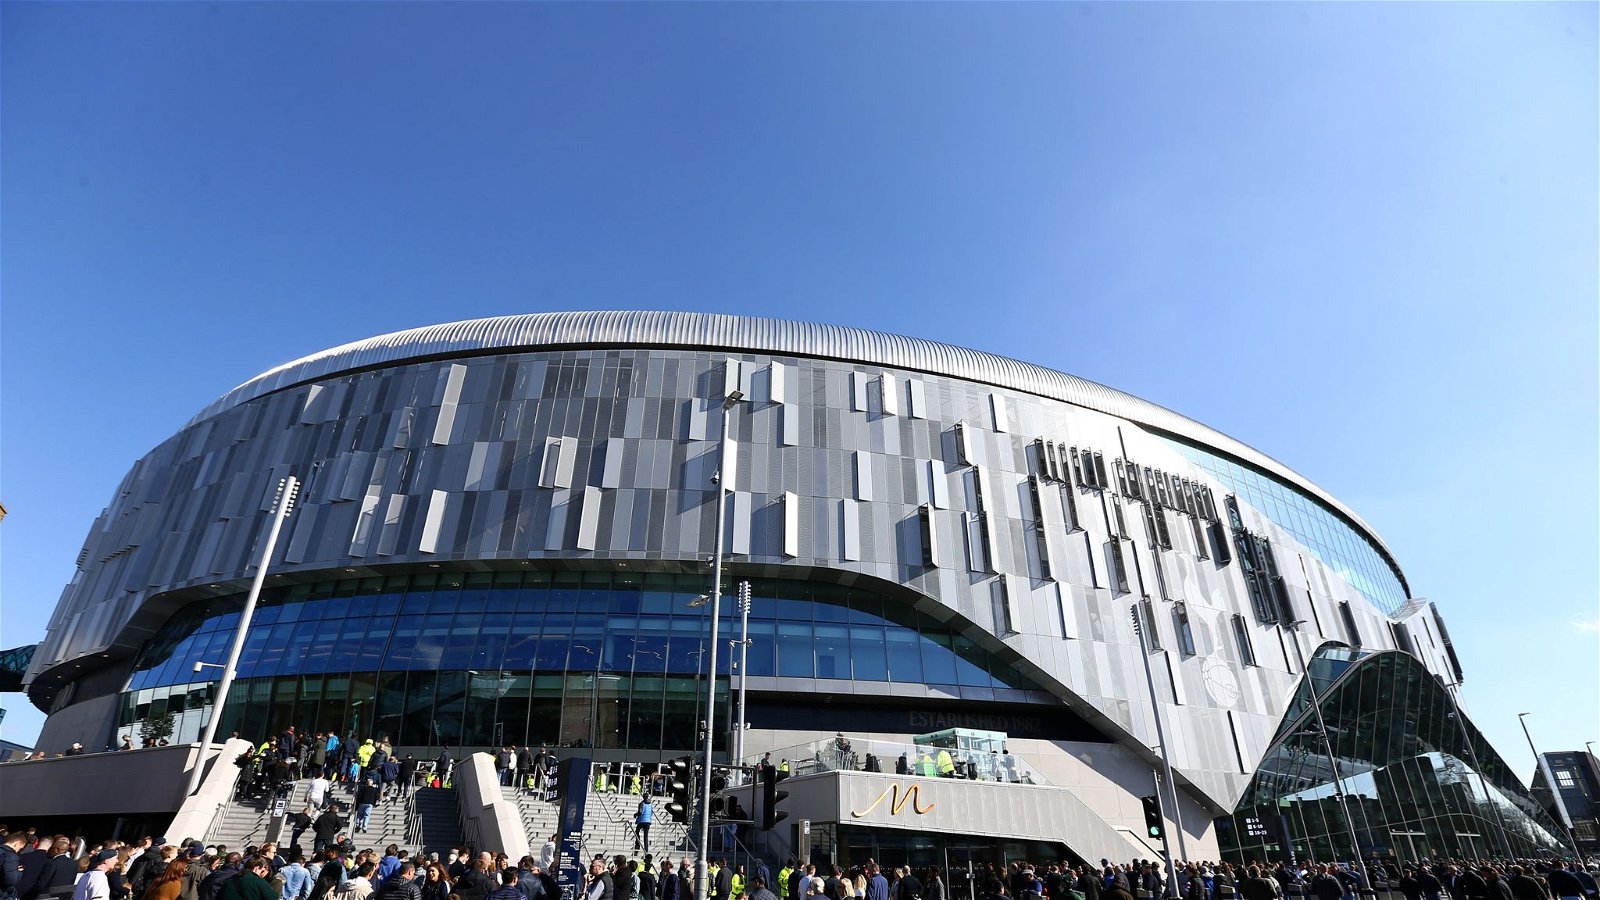 Tottenham Hotspur Stadium - 62,850 Capacity: Premier League Stadiums